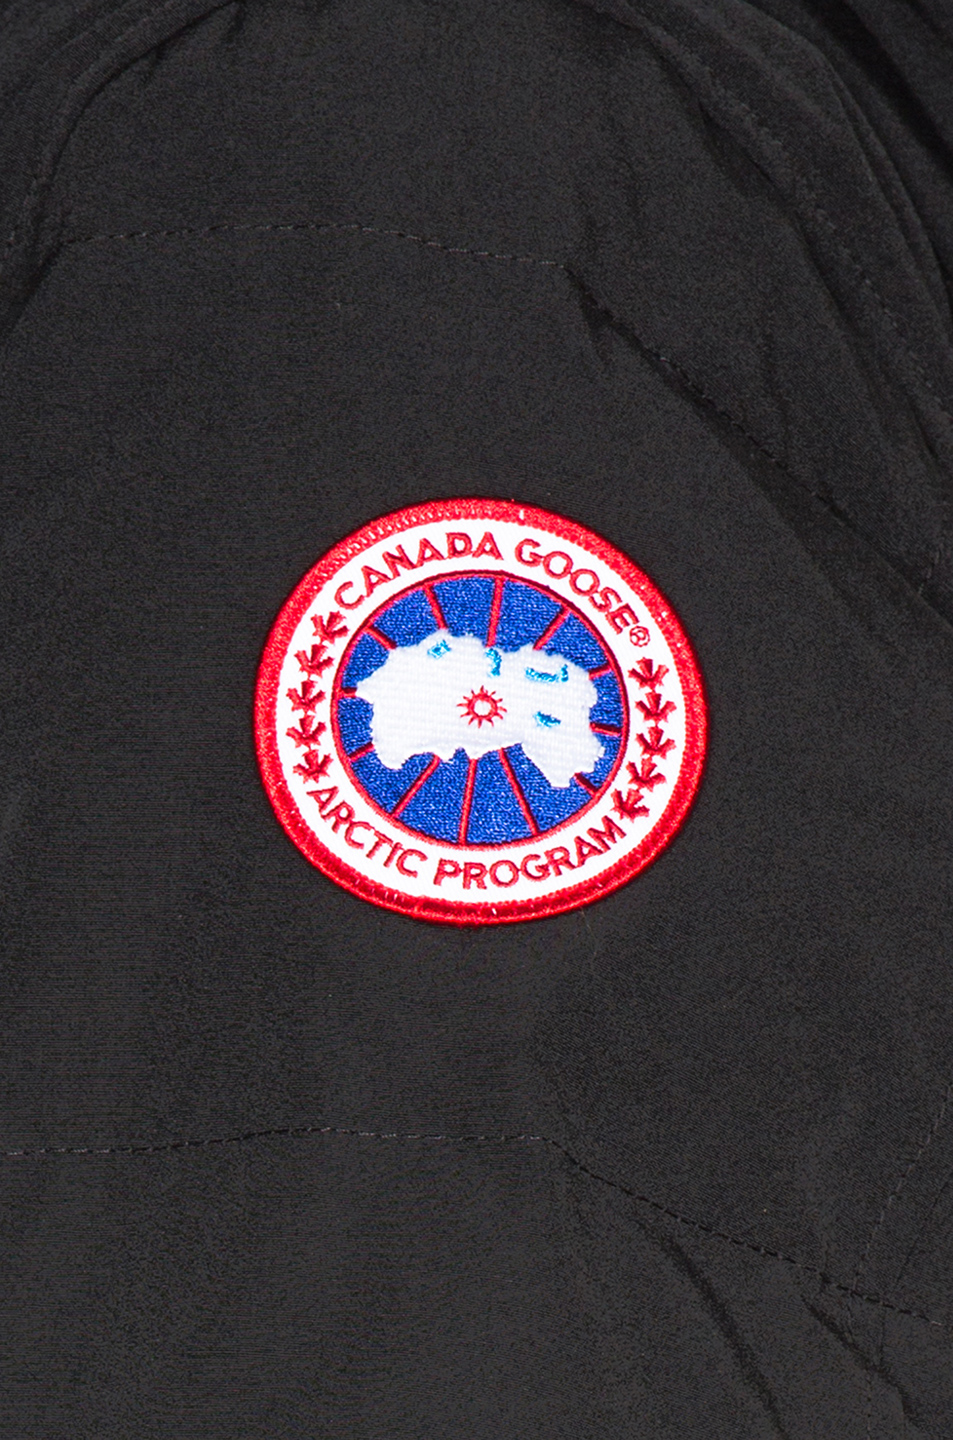 加拿大鹅logo 黑标图片